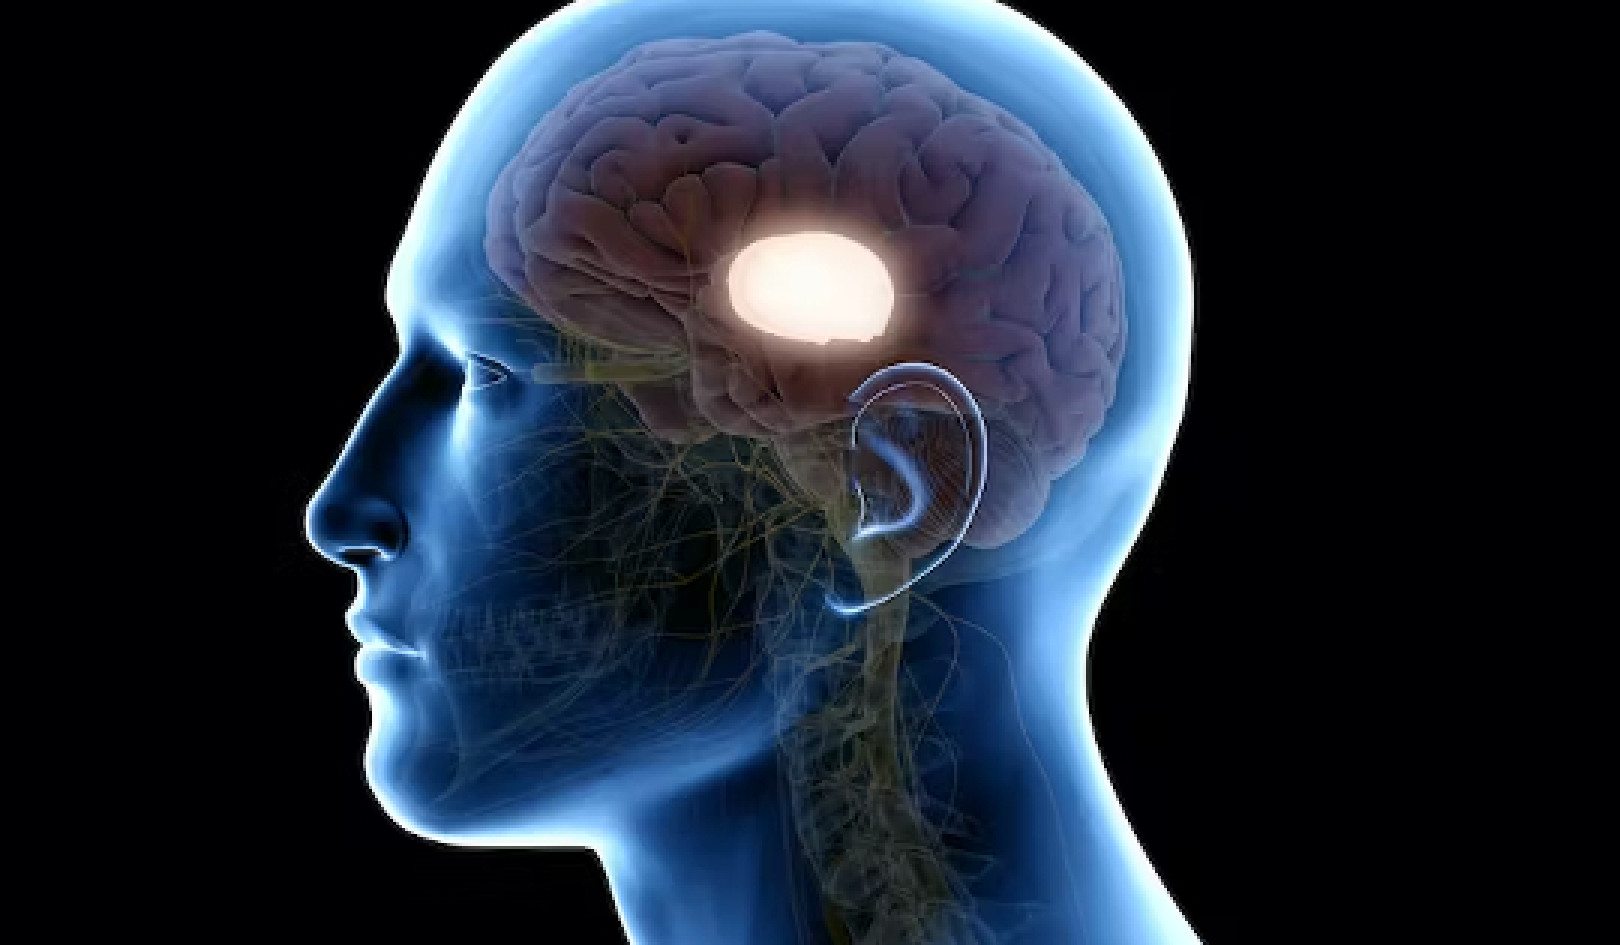 Conmoción cerebral: Casi el 50 % aún tiene lesión cerebral después de 6 meses